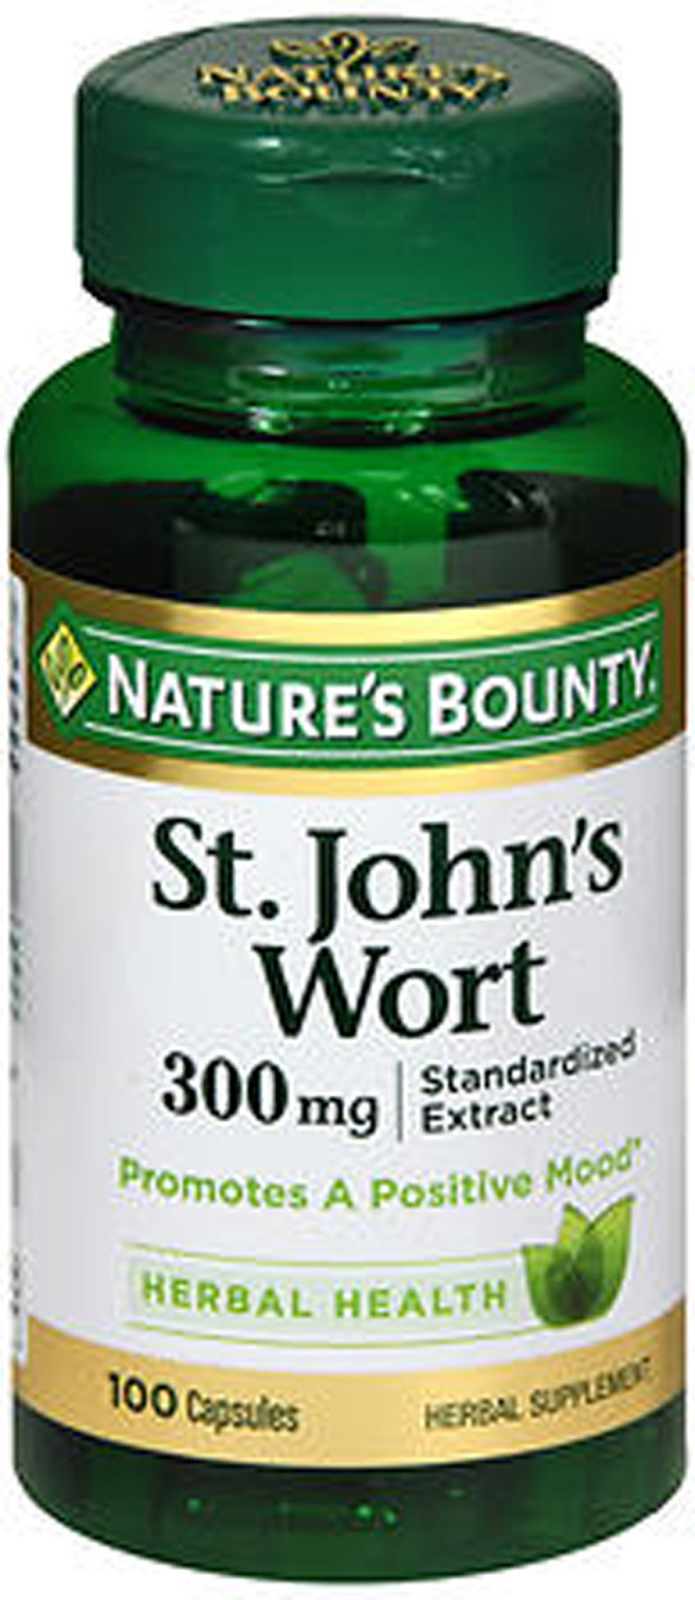 Nature's Bounty St. John's Wort Herbal Supplement 300 mg - 100 Capsules